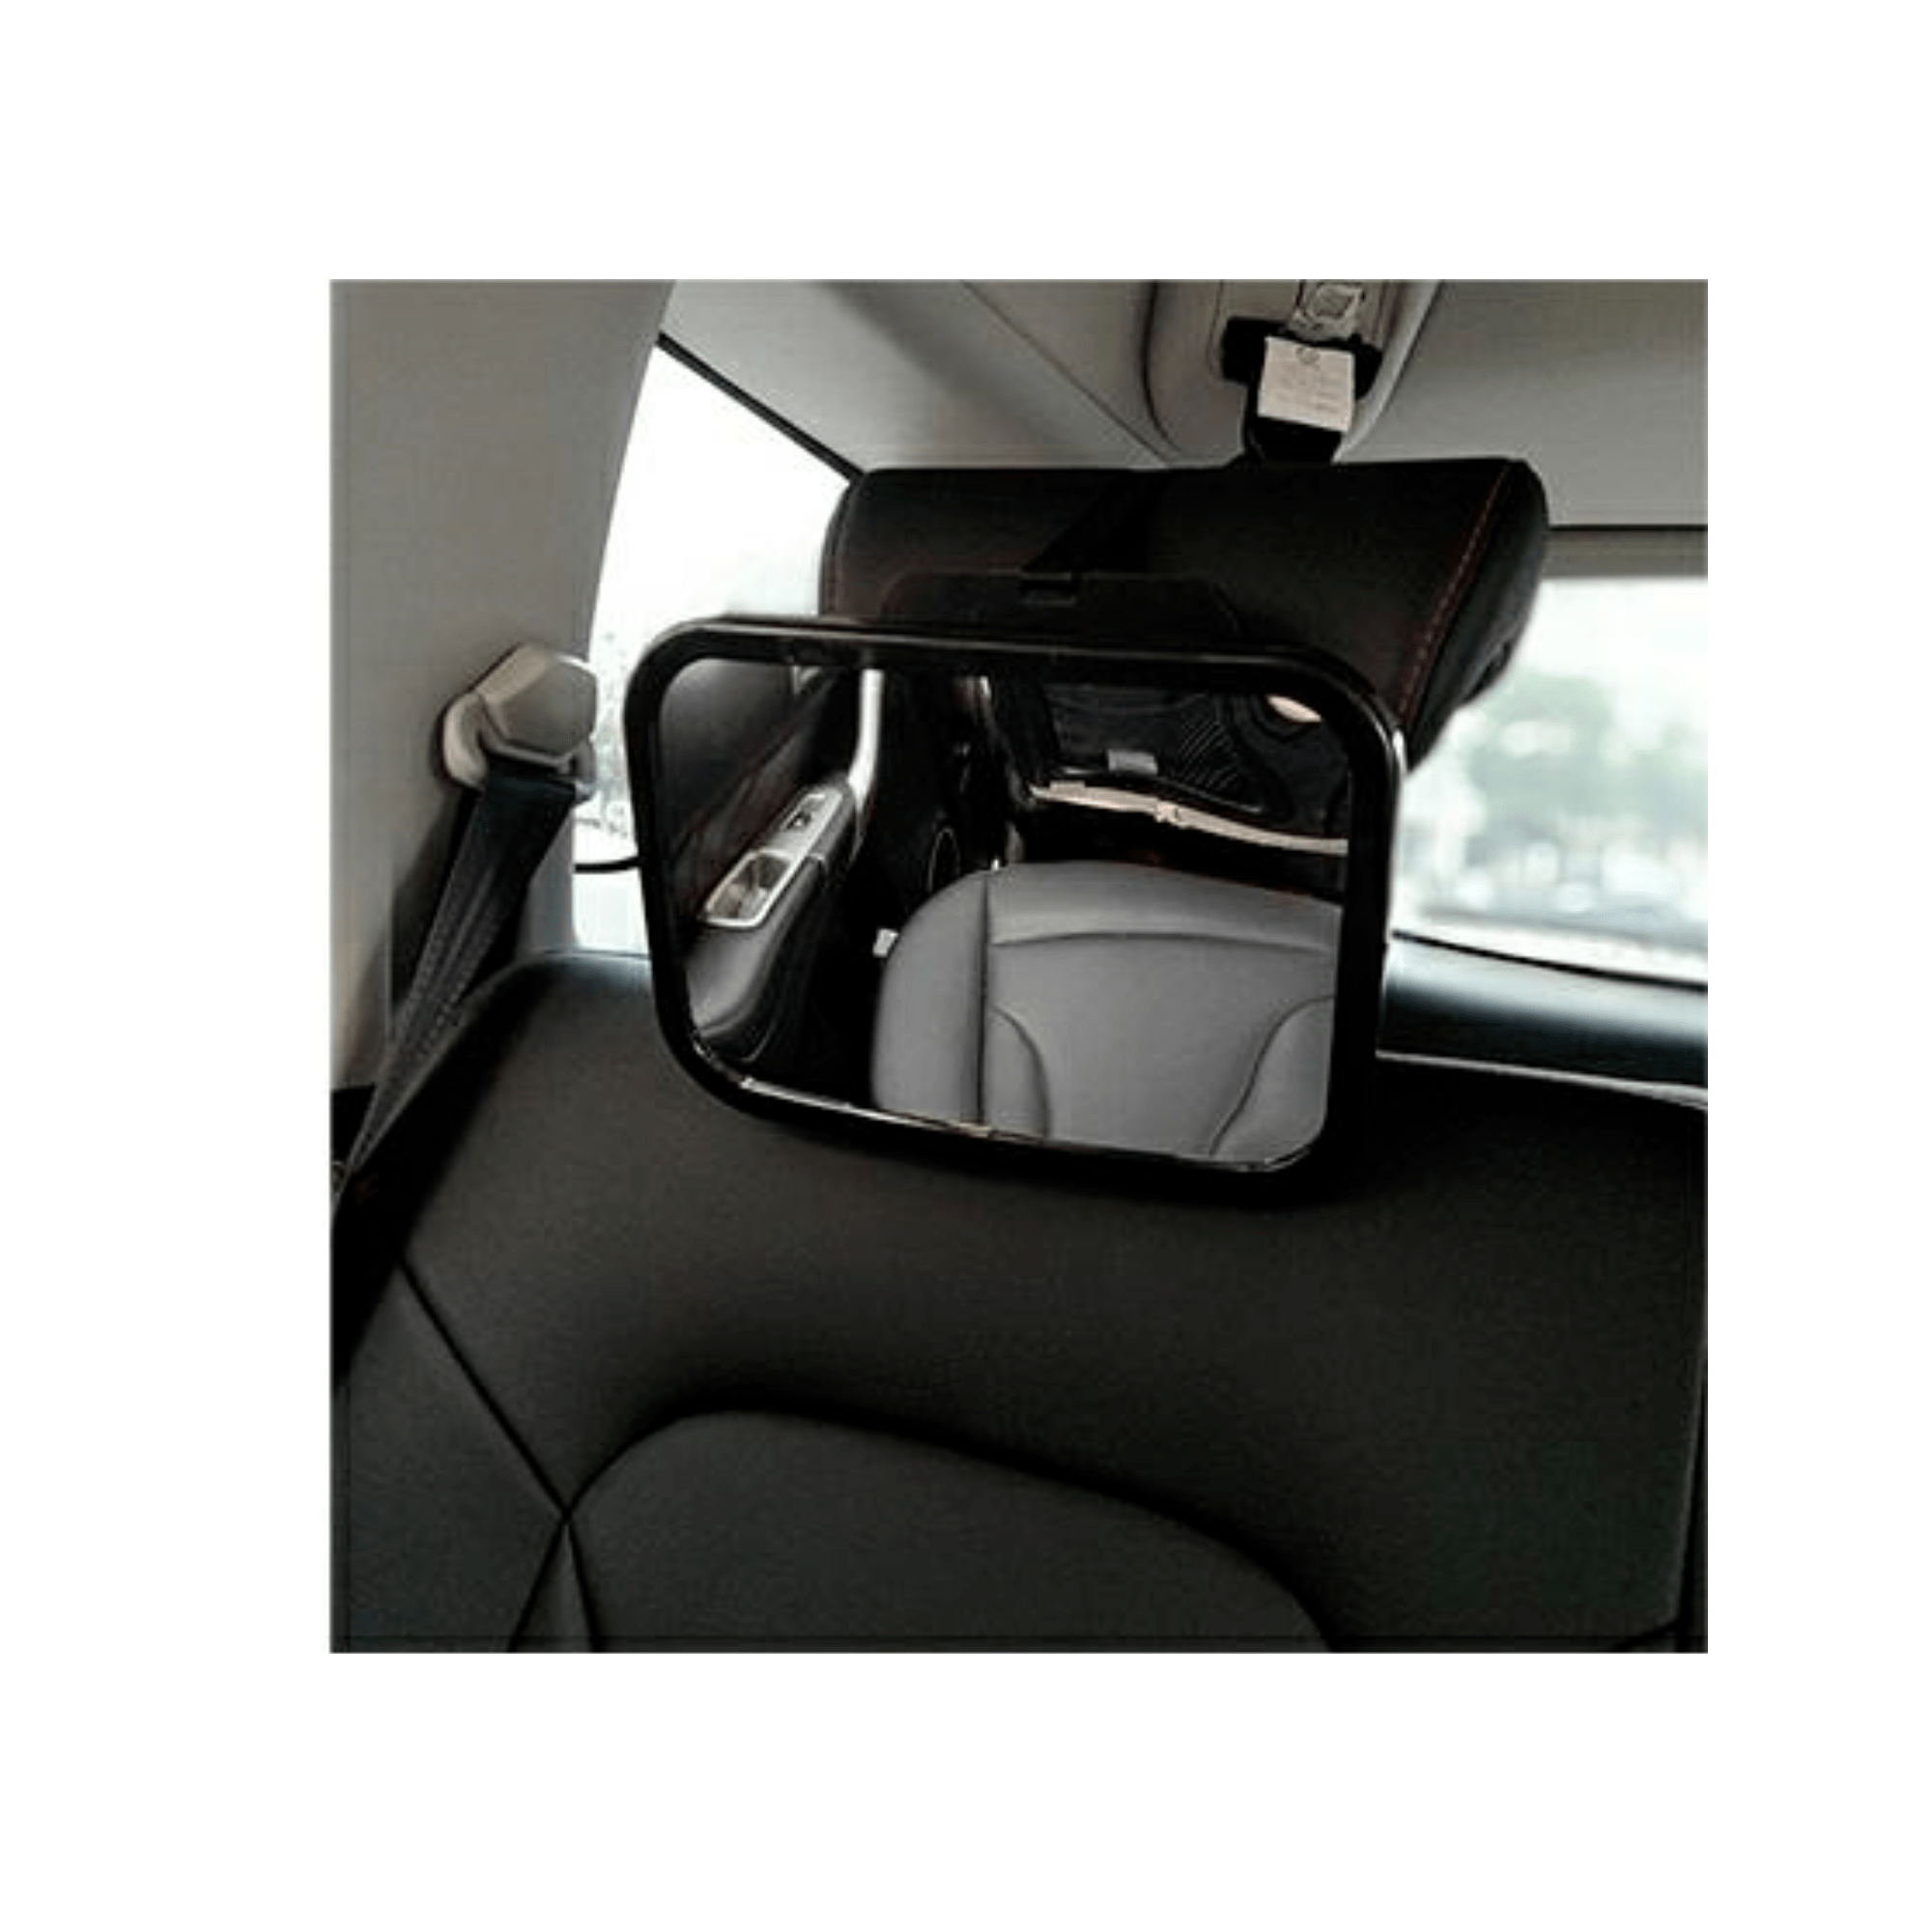 Cangaroo verstelbare baby spiegel voor auto, kind achterbank